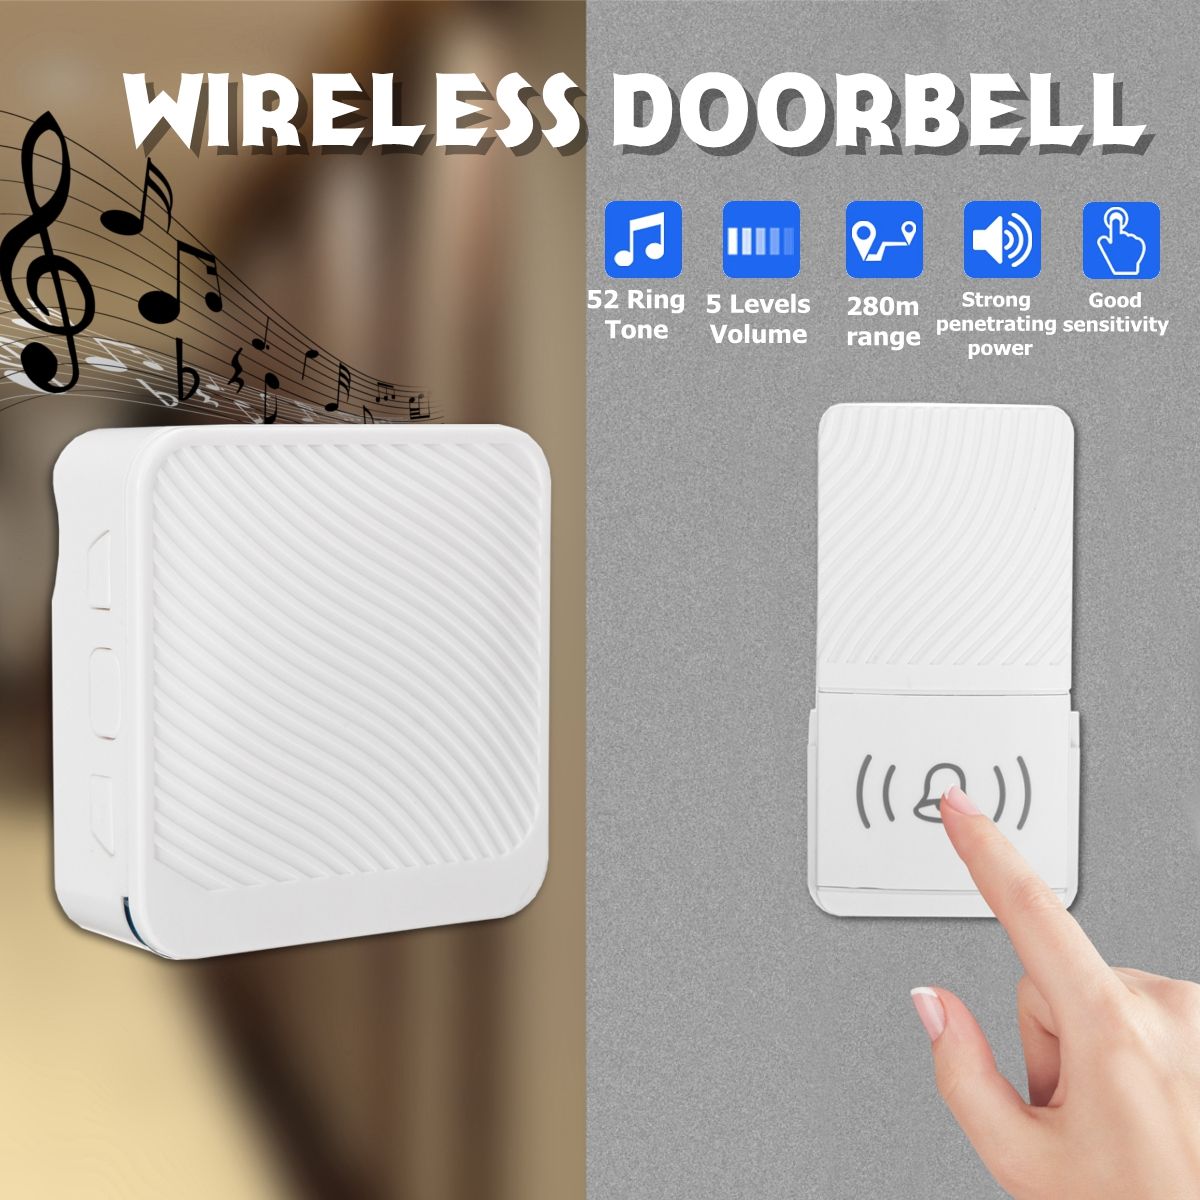 Wireless-Doorbell-52-Song-Chime-5-Volume-Level-Door-Bell-12-Receiver-Button-1519484